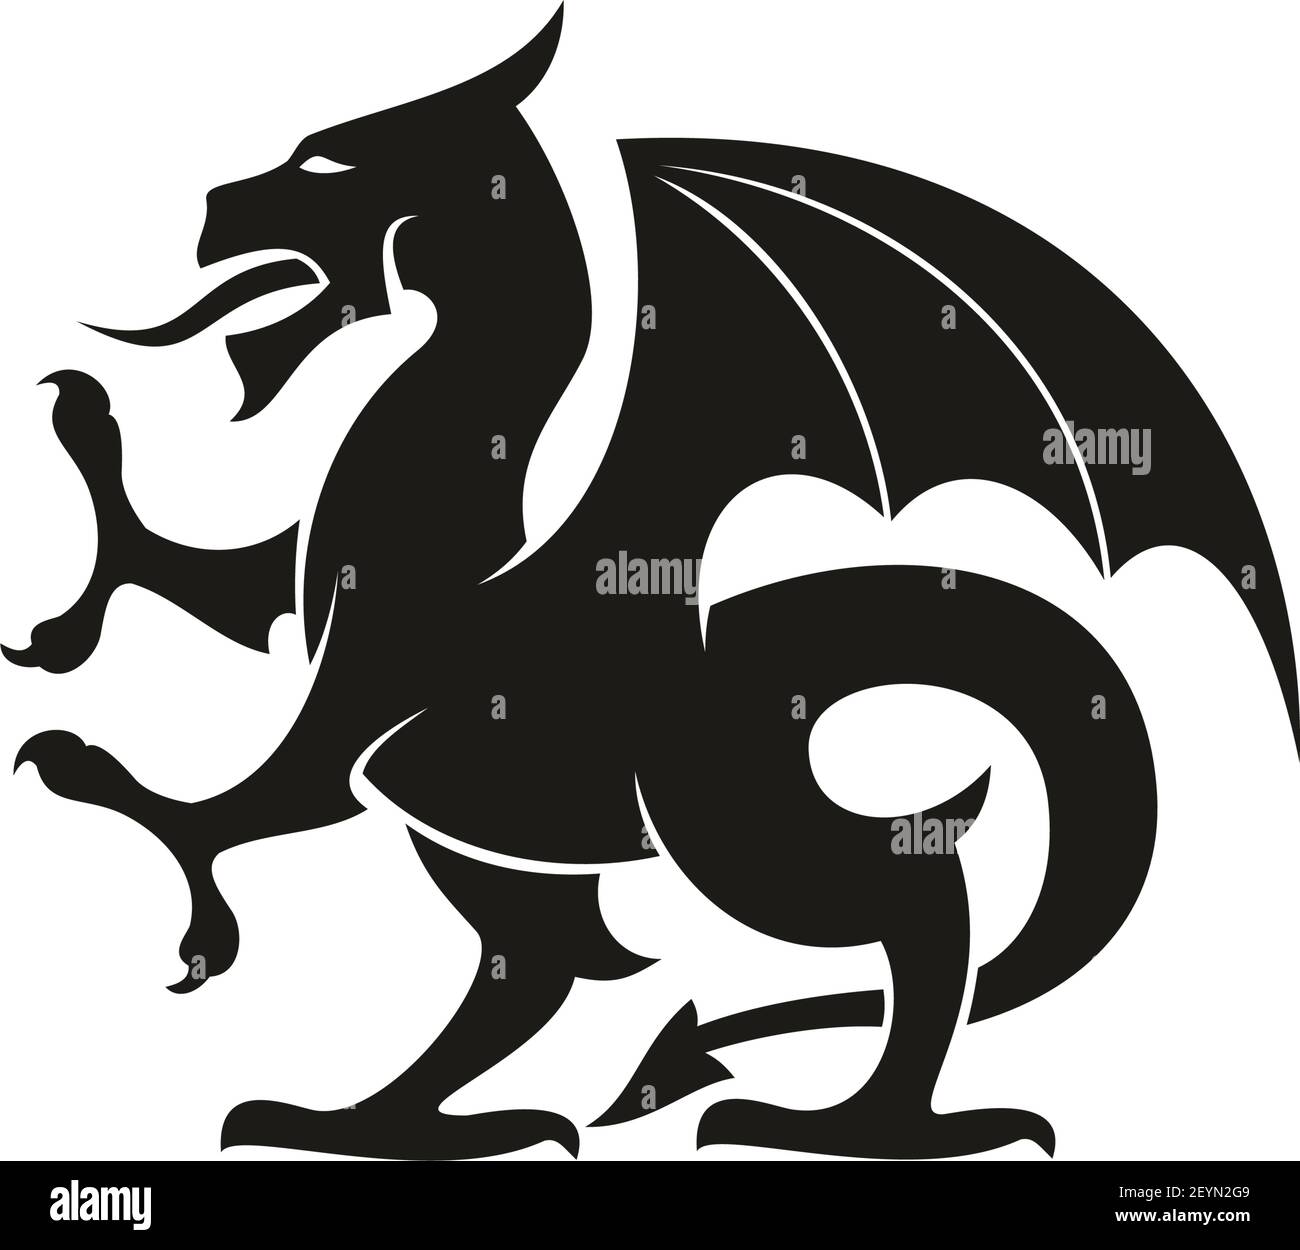 Drago o o grifone isolato bestia eraldica medievale. Creatura mitica vettoriale con gambe e ali di aquila Illustrazione Vettoriale